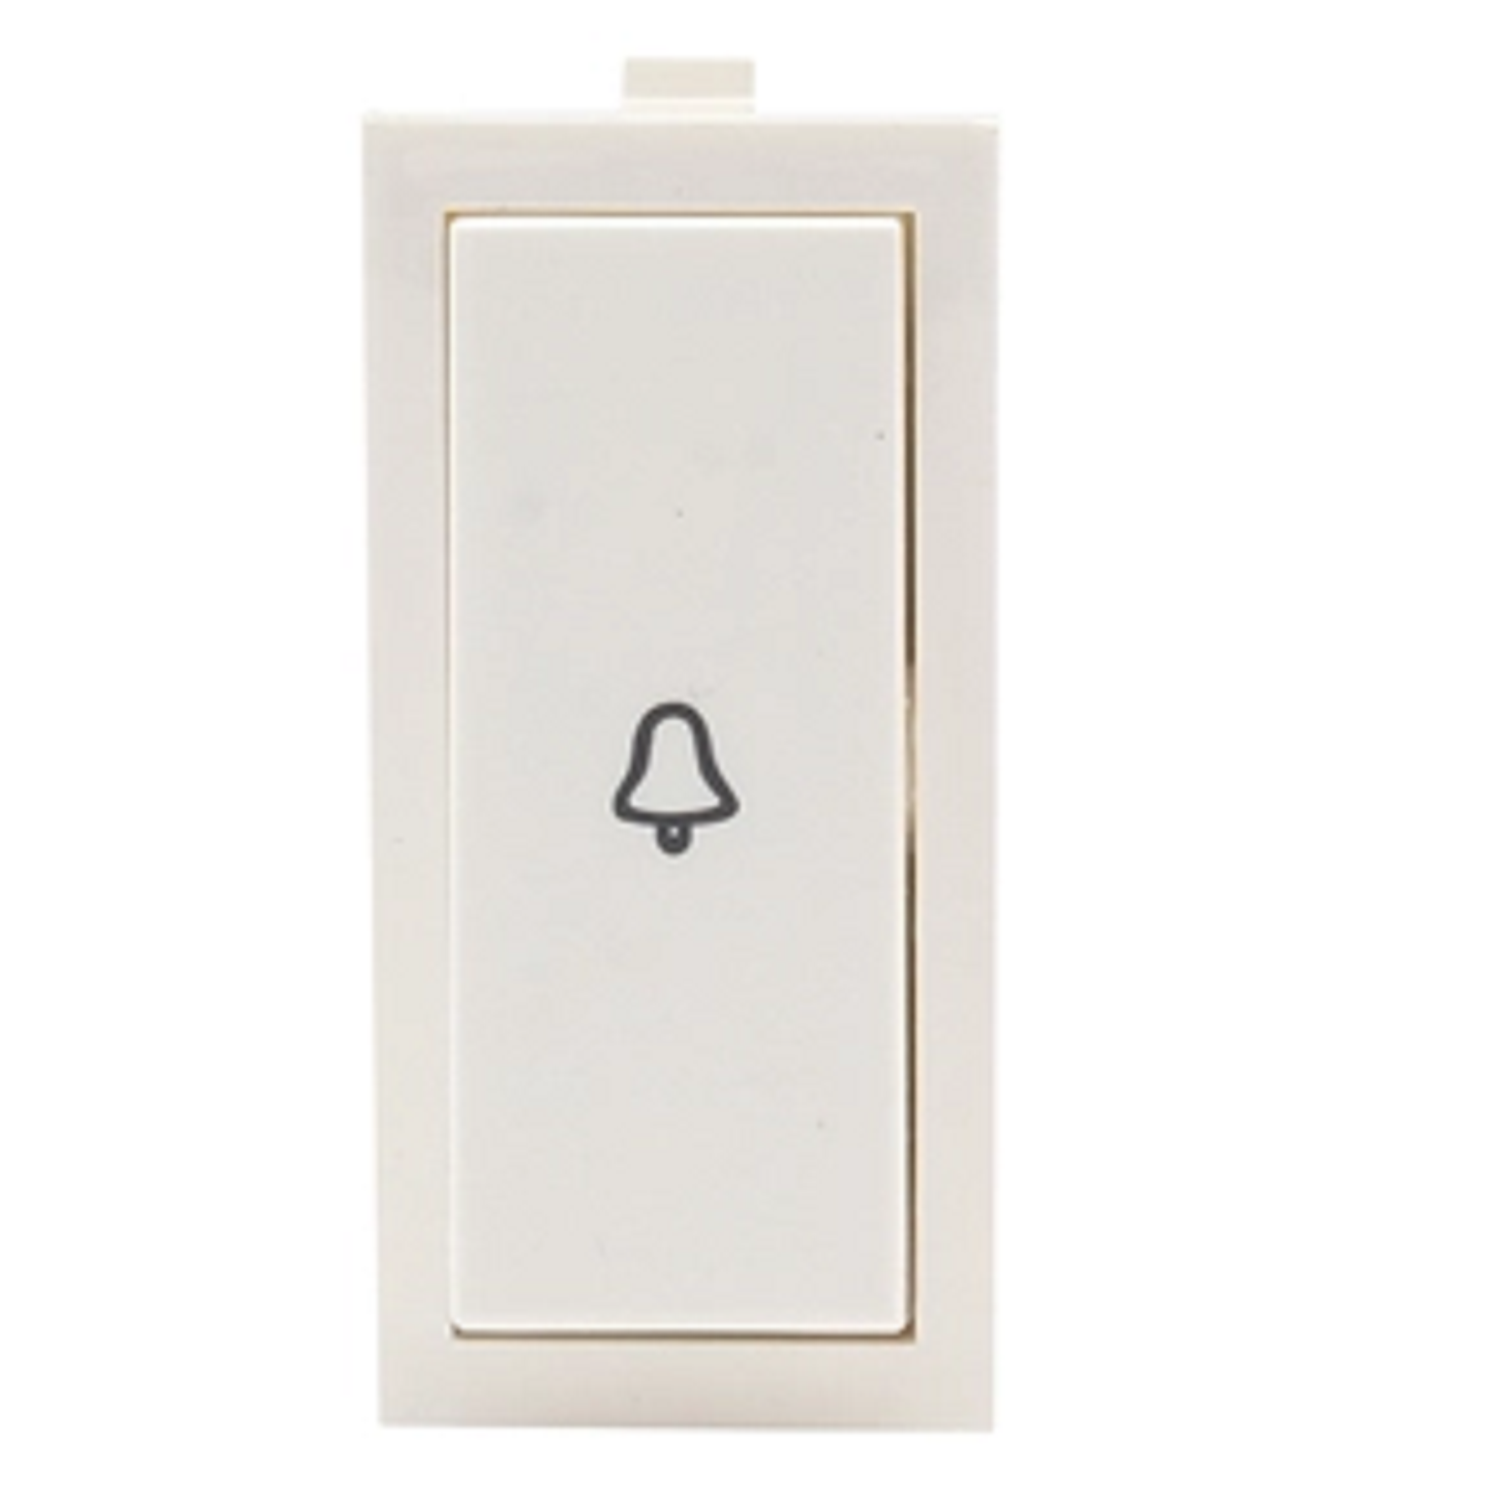 Bell Push Switch 10Amp,1 Module, GreatWhite Fiana - White